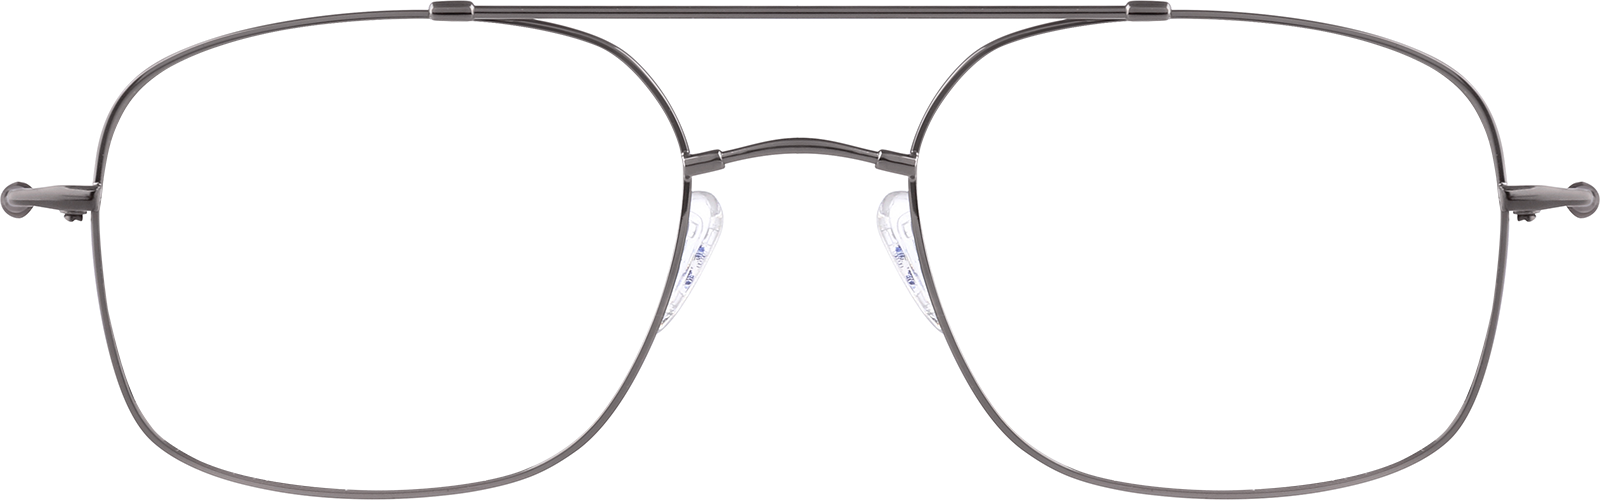 Aviator Glasseslens frame image